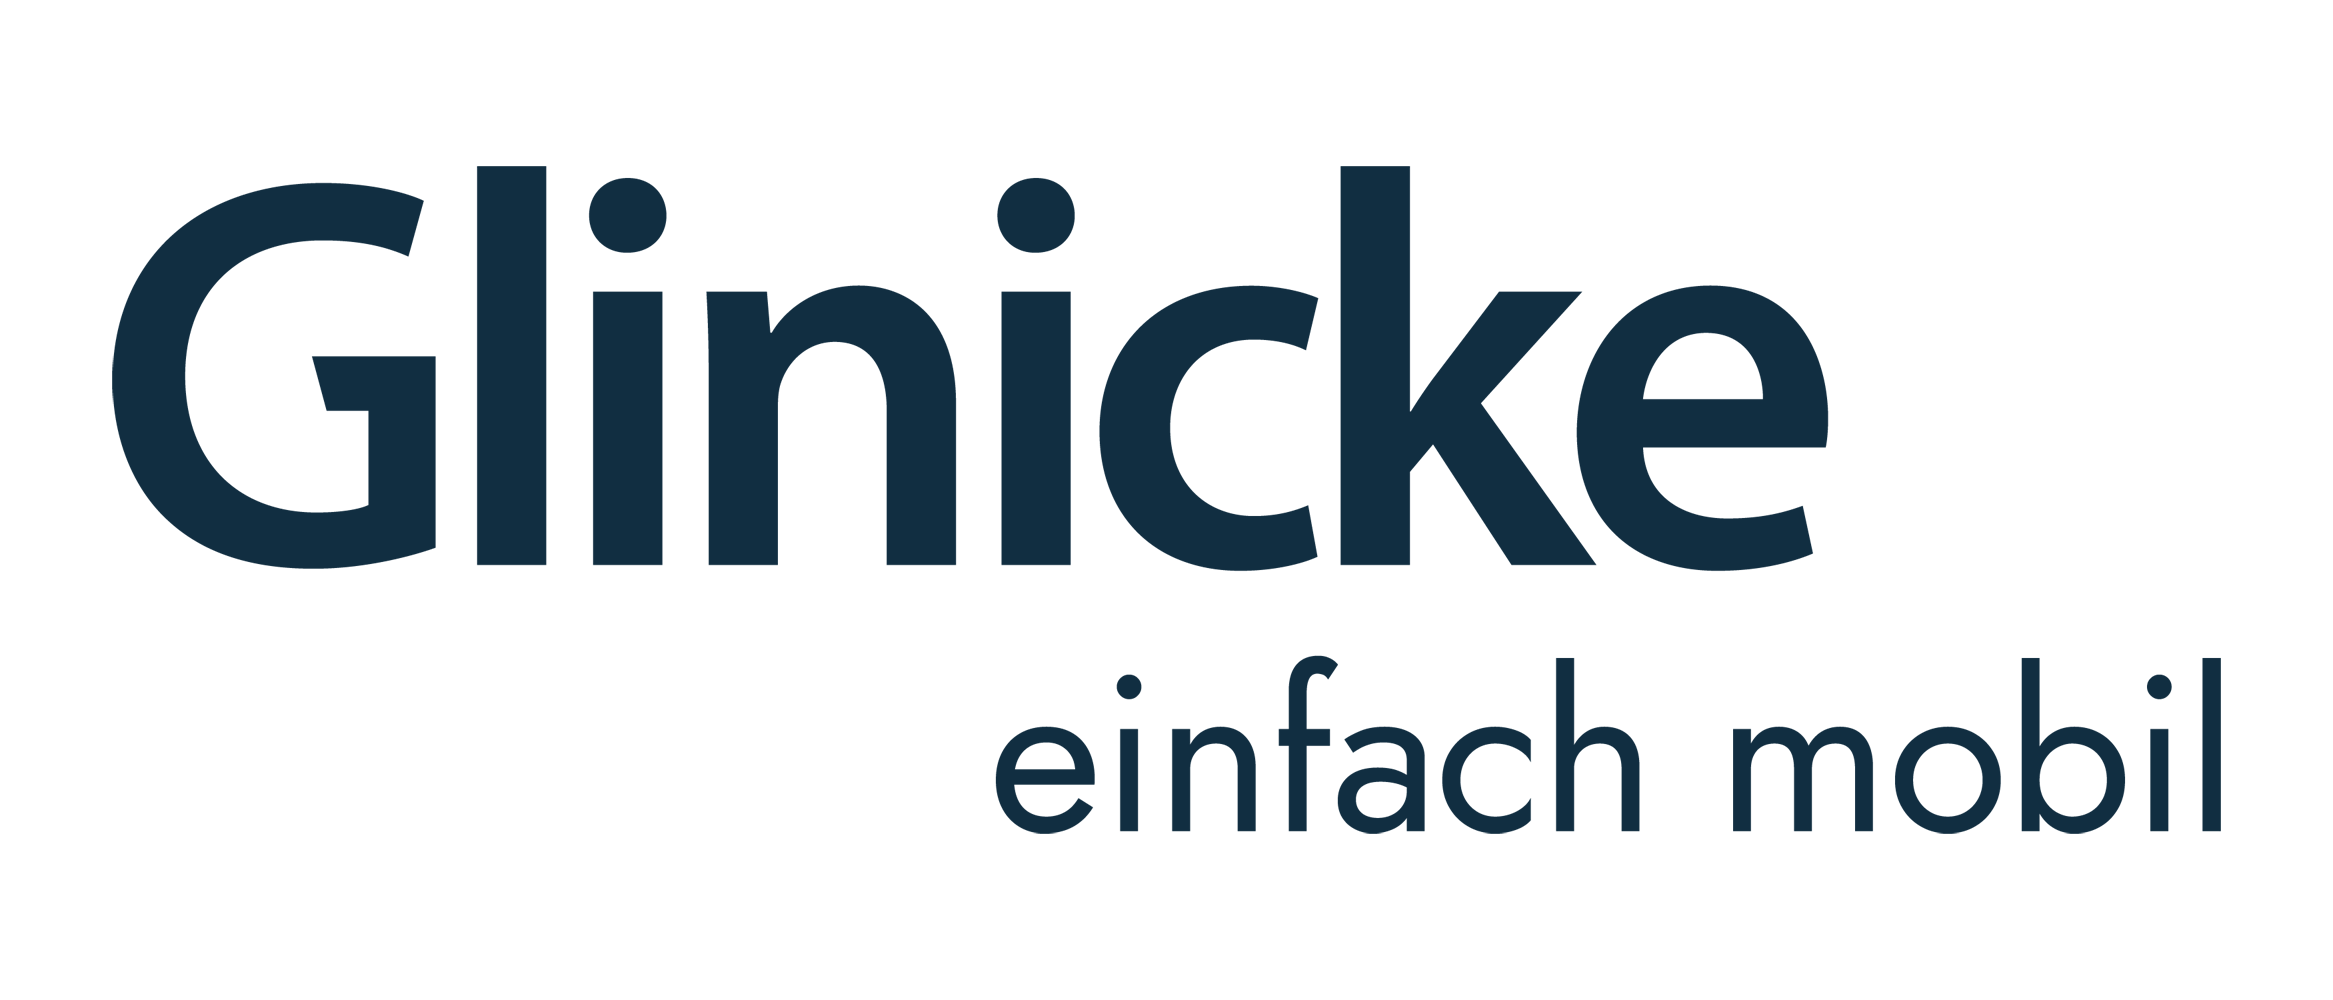 Glinicke Dienstleistungs GmbH